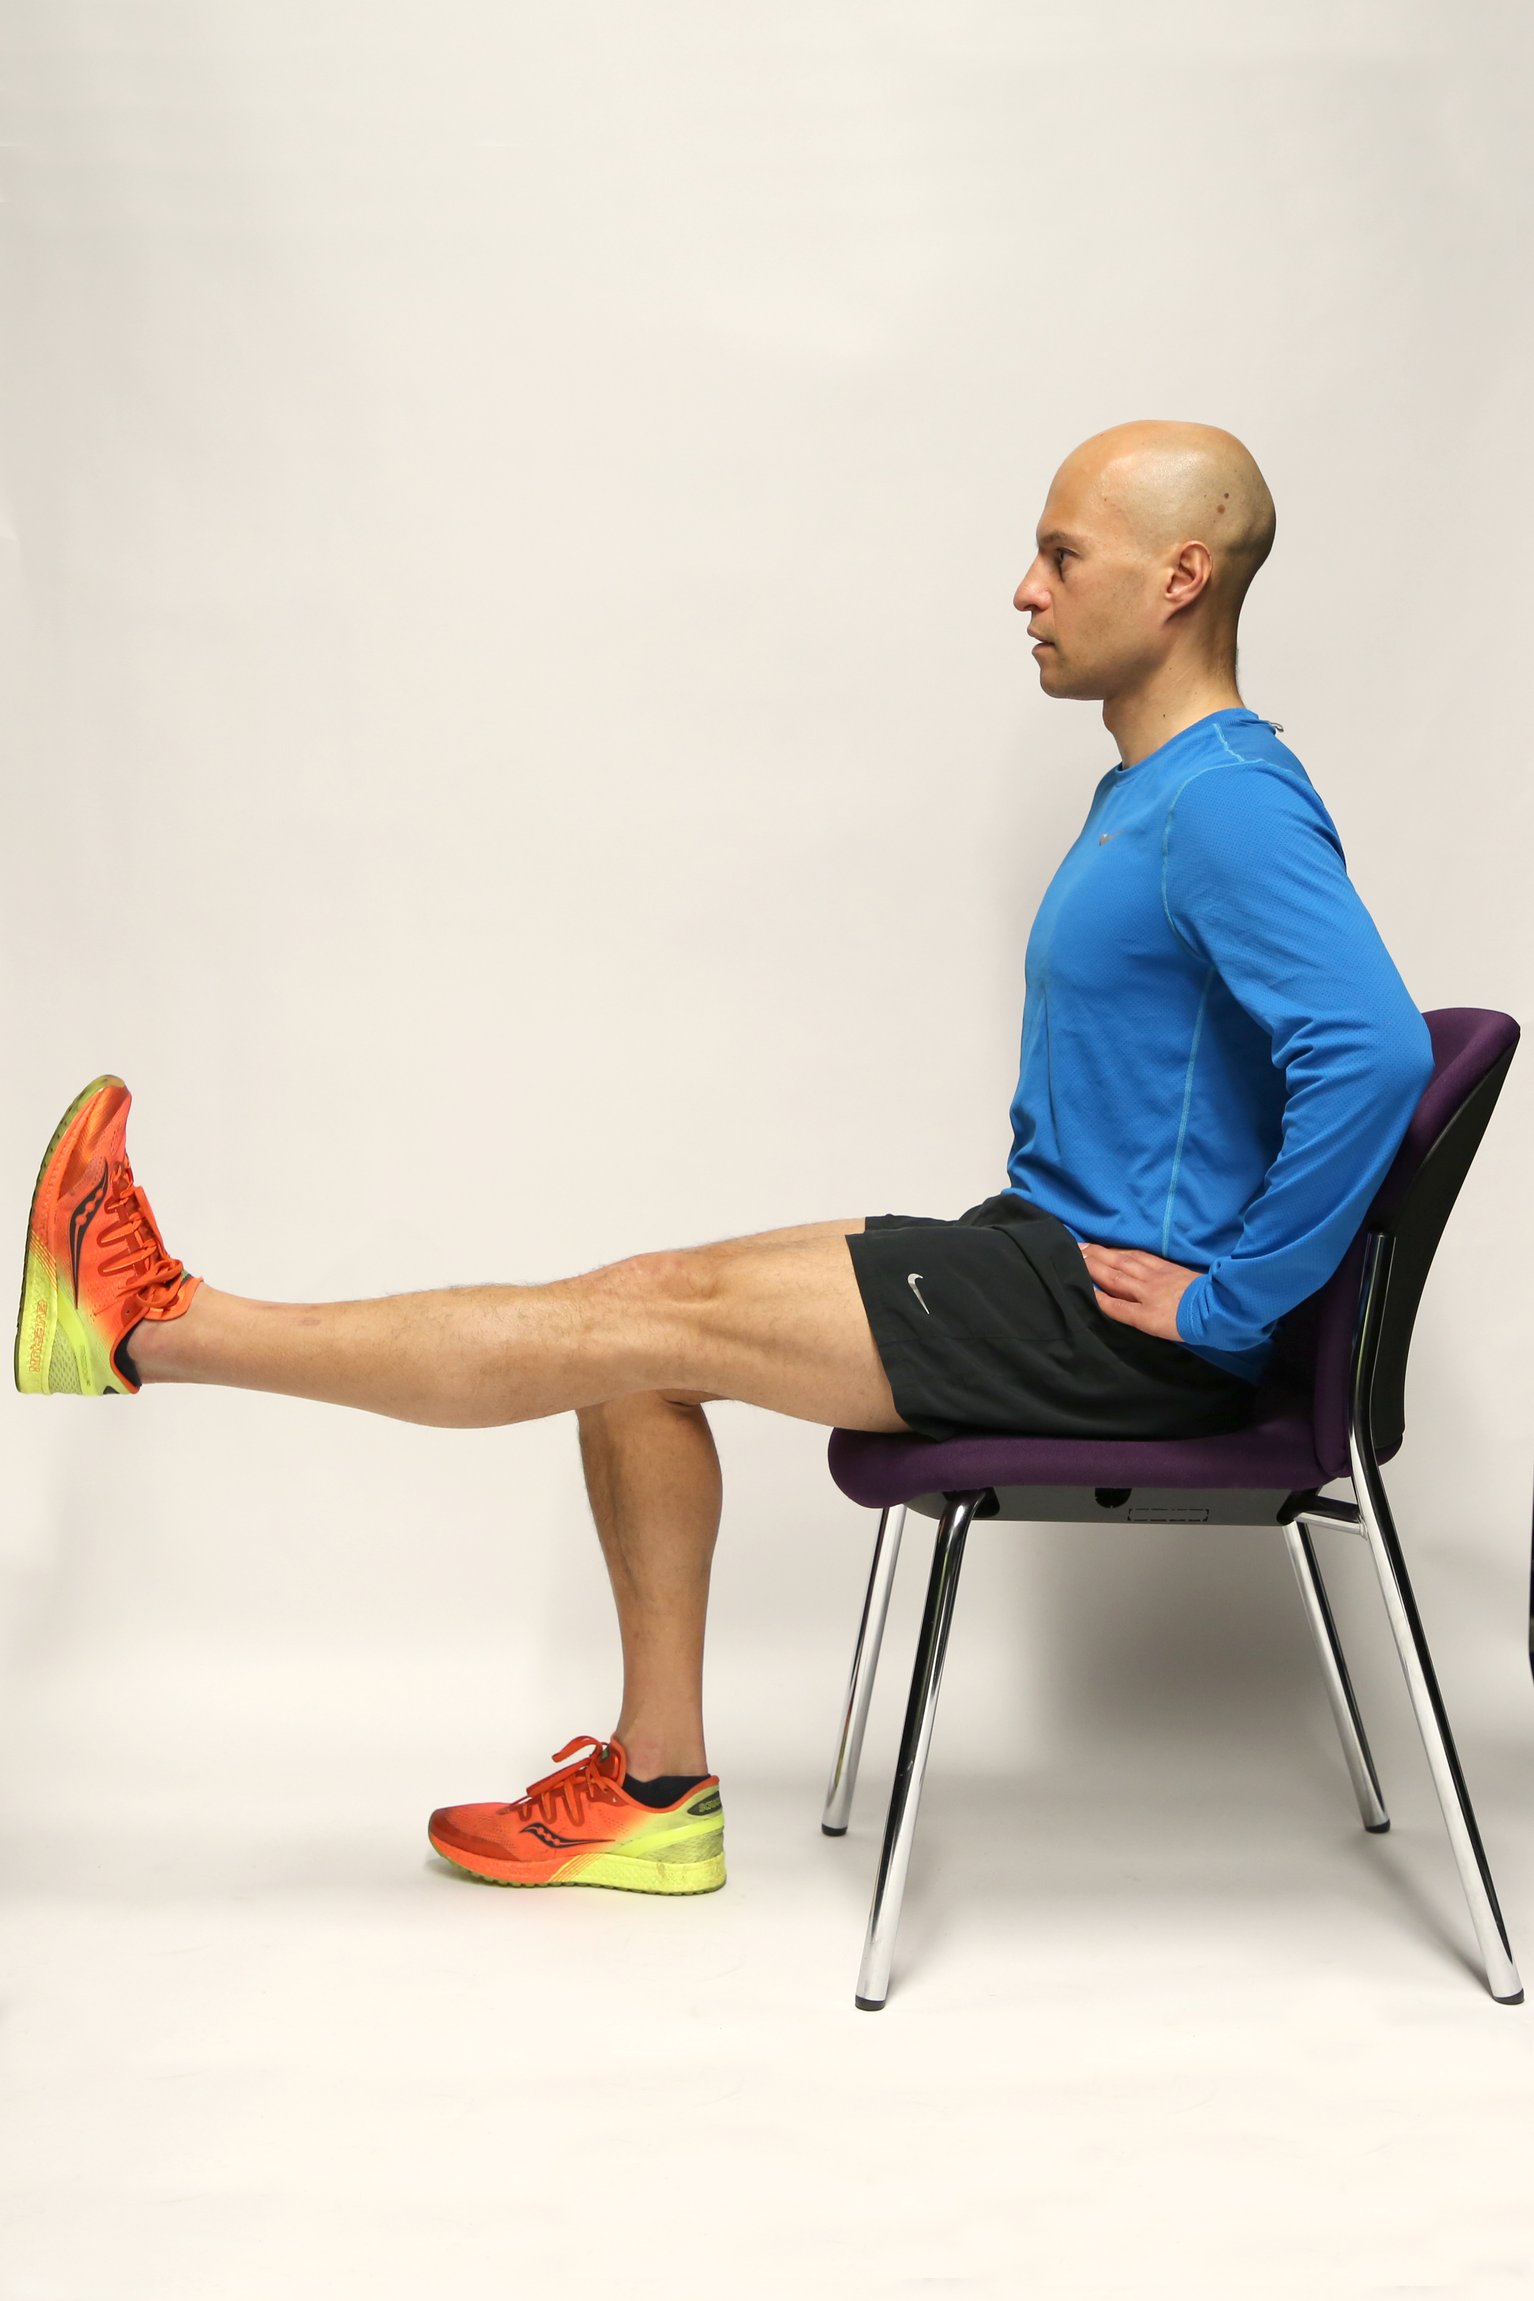 El dolor de rodilla puede ser evitado con el ejercicio adecuado